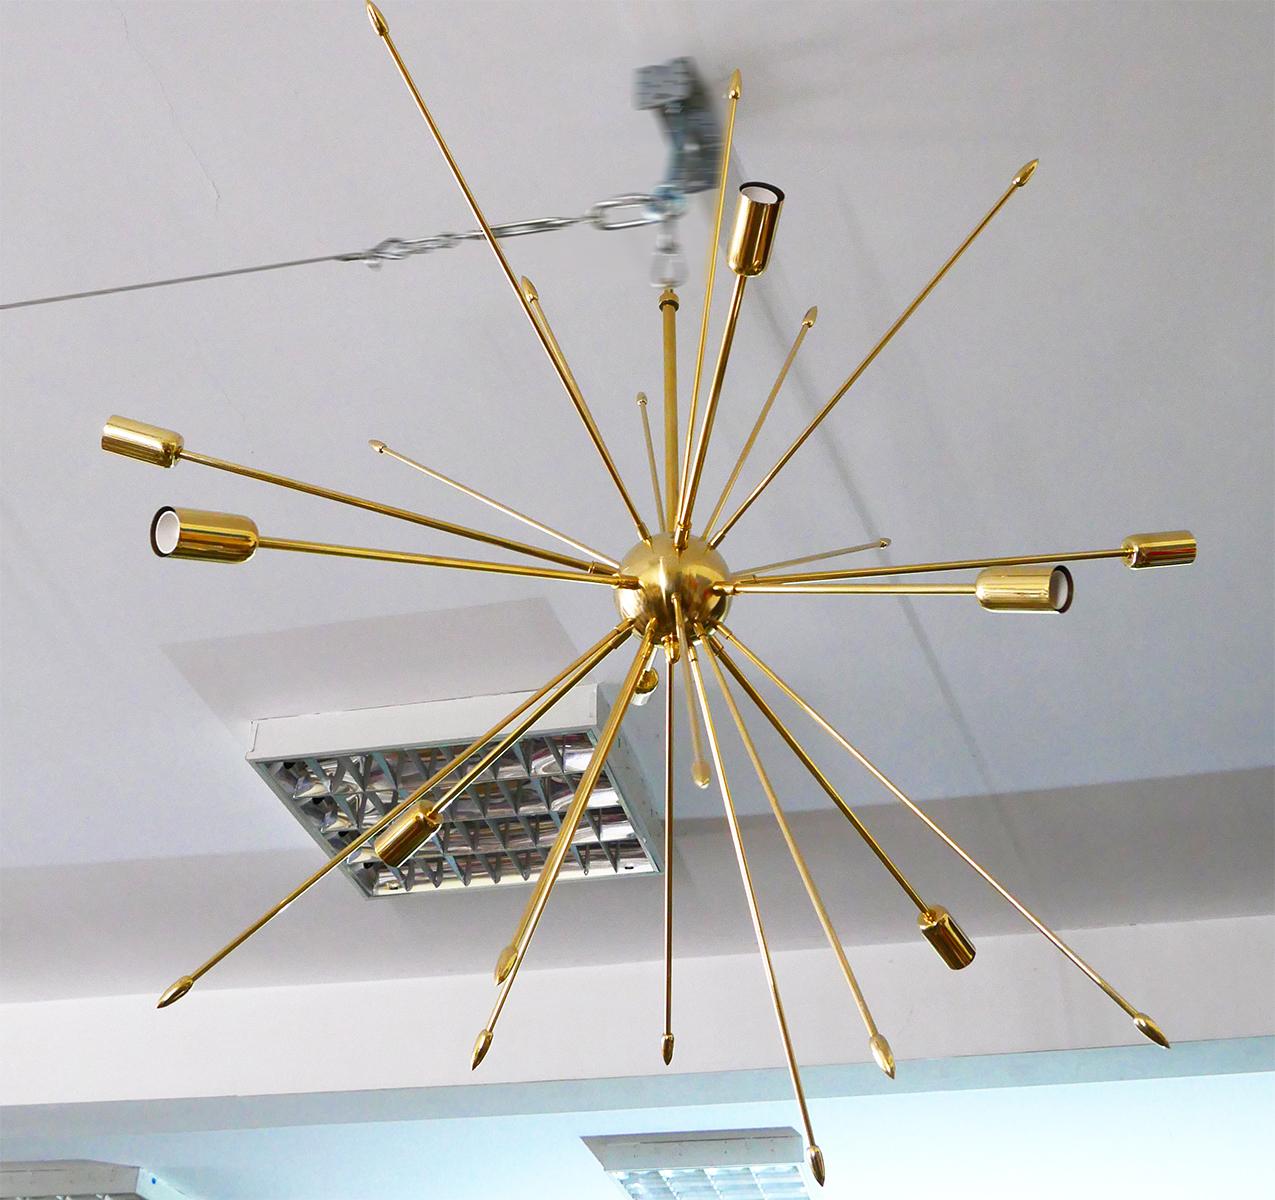 Connie  - solid brass chandelier.

Diamater: 90 cm (35